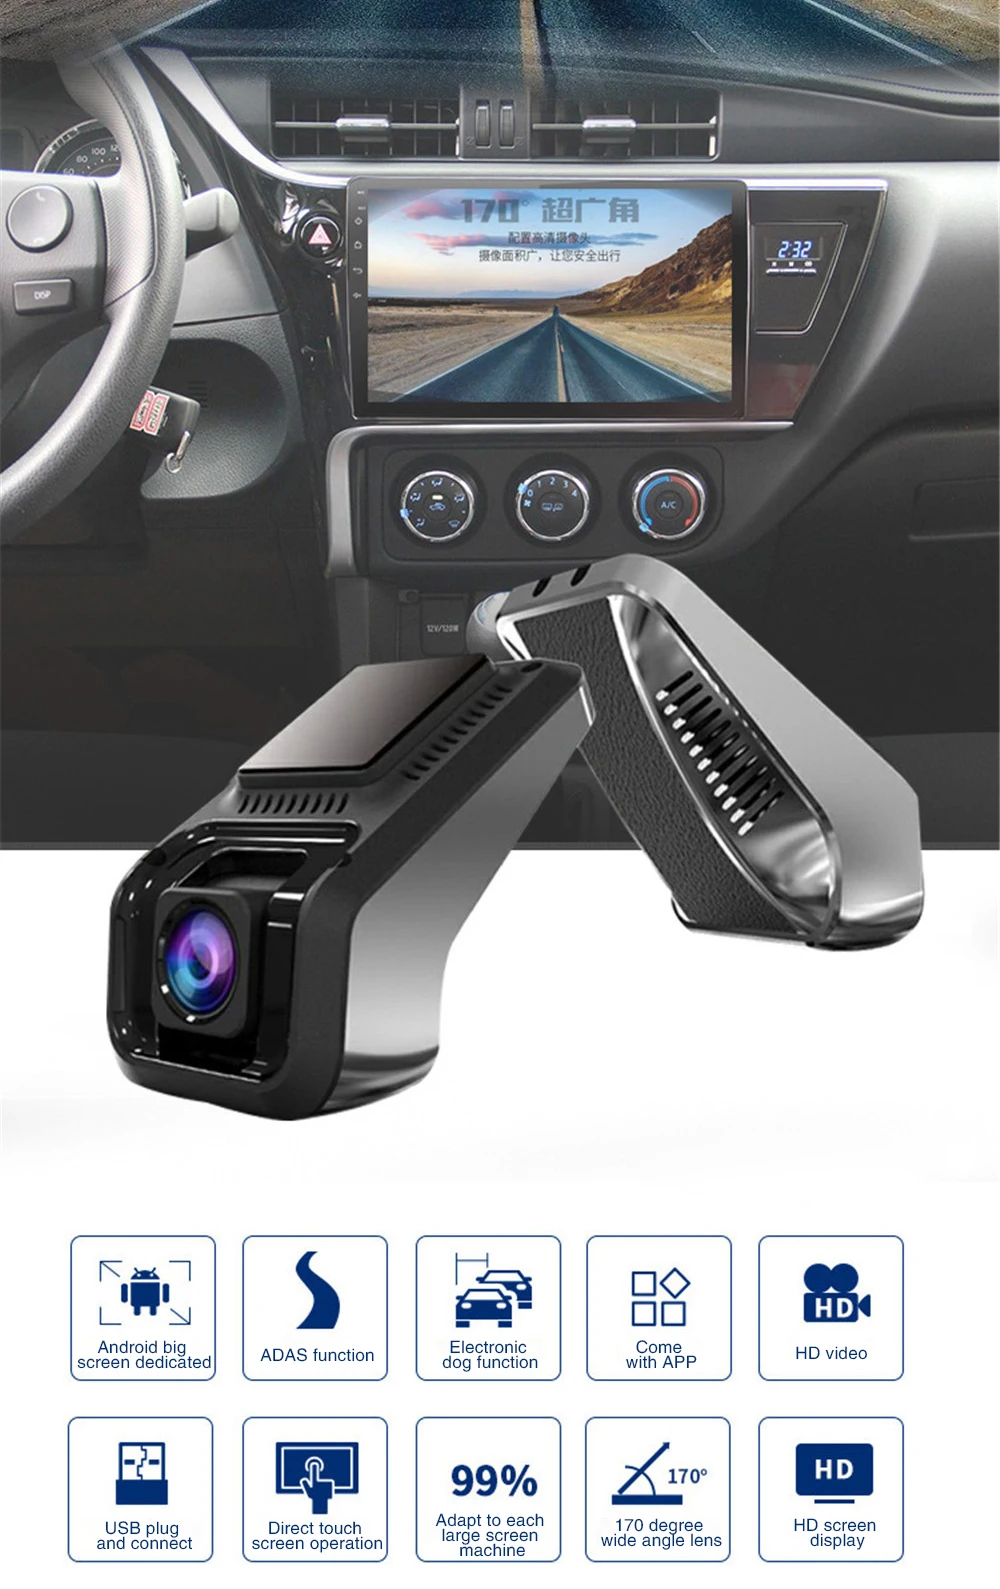 Однокамерный видеорегистратор ADAS Electronic Dog Alloy 1080P Full HD Навигация USB рекордер мини камера для автомобиля запись U8